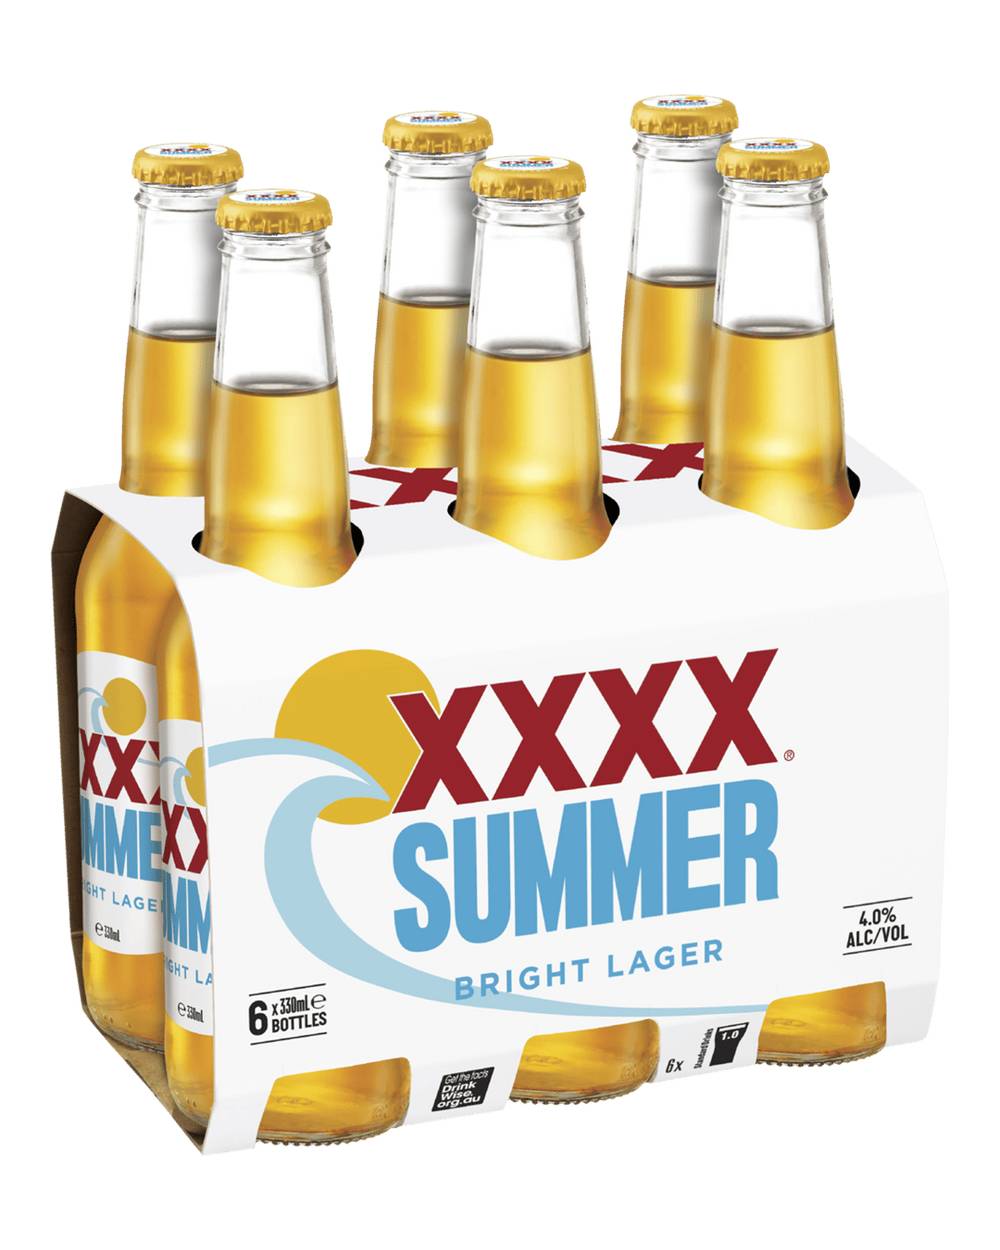 XXXX Summer Bright Lager Bottle 6x330ml